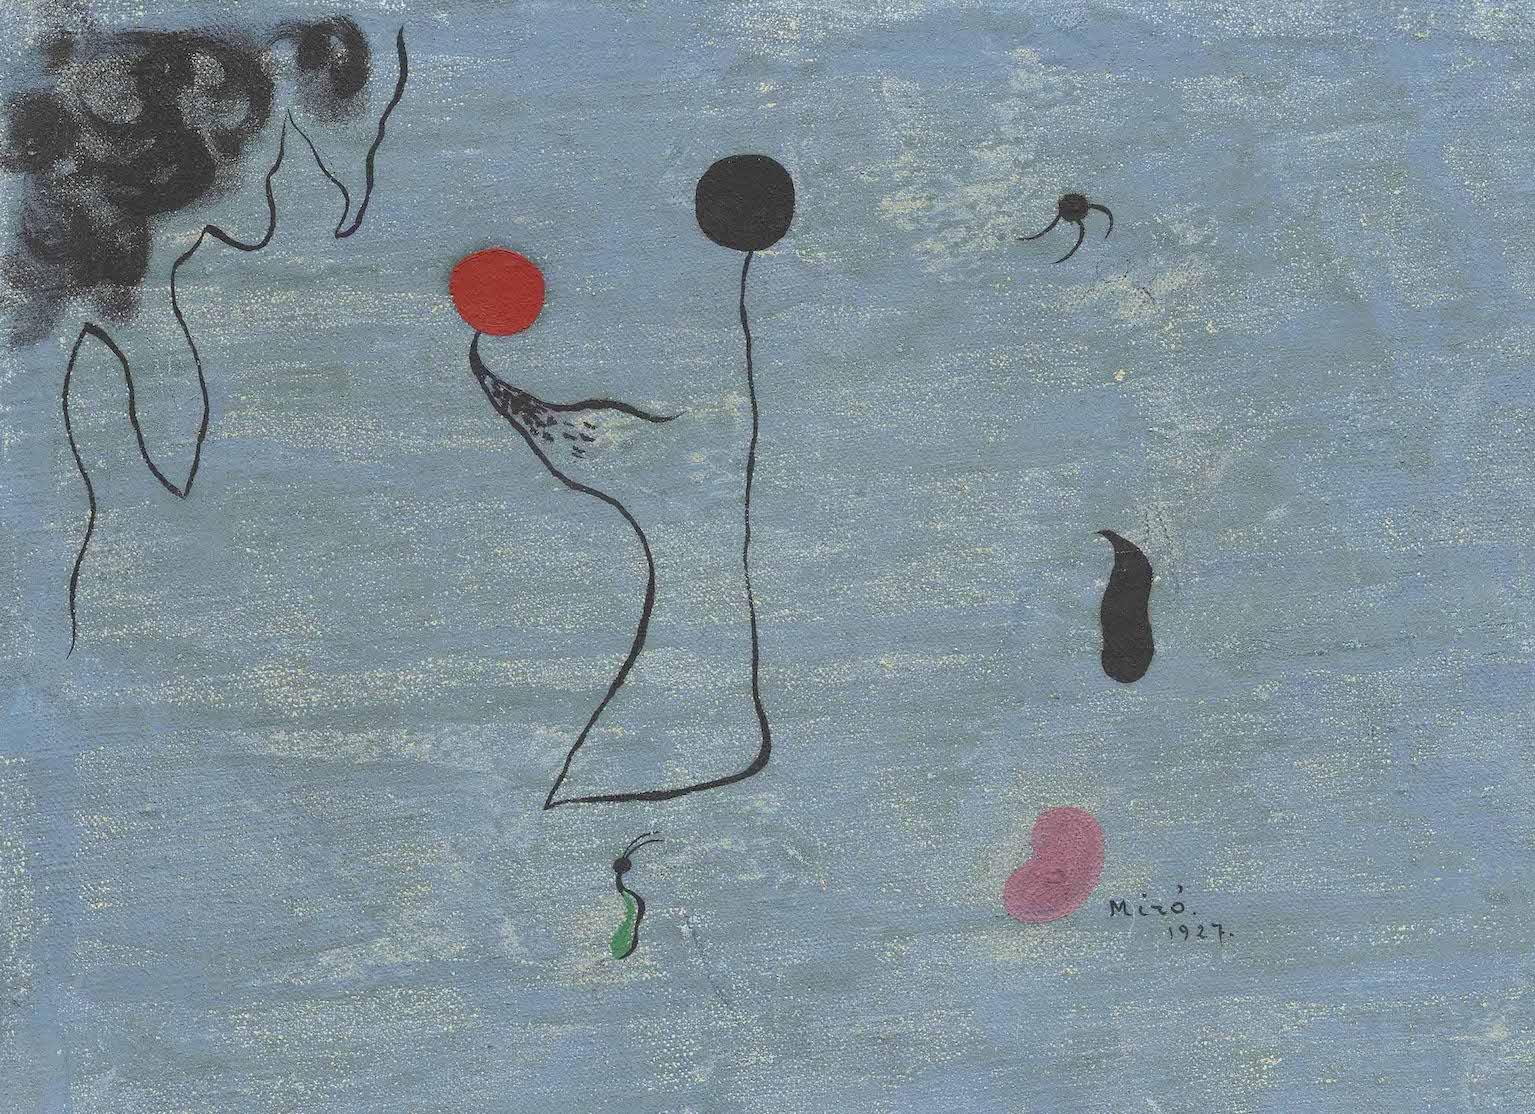 Joan Miró, Peinture - Bleu, JK Art Foundation/Het Noordbrabants Museum, 's-Hertogenbosch.